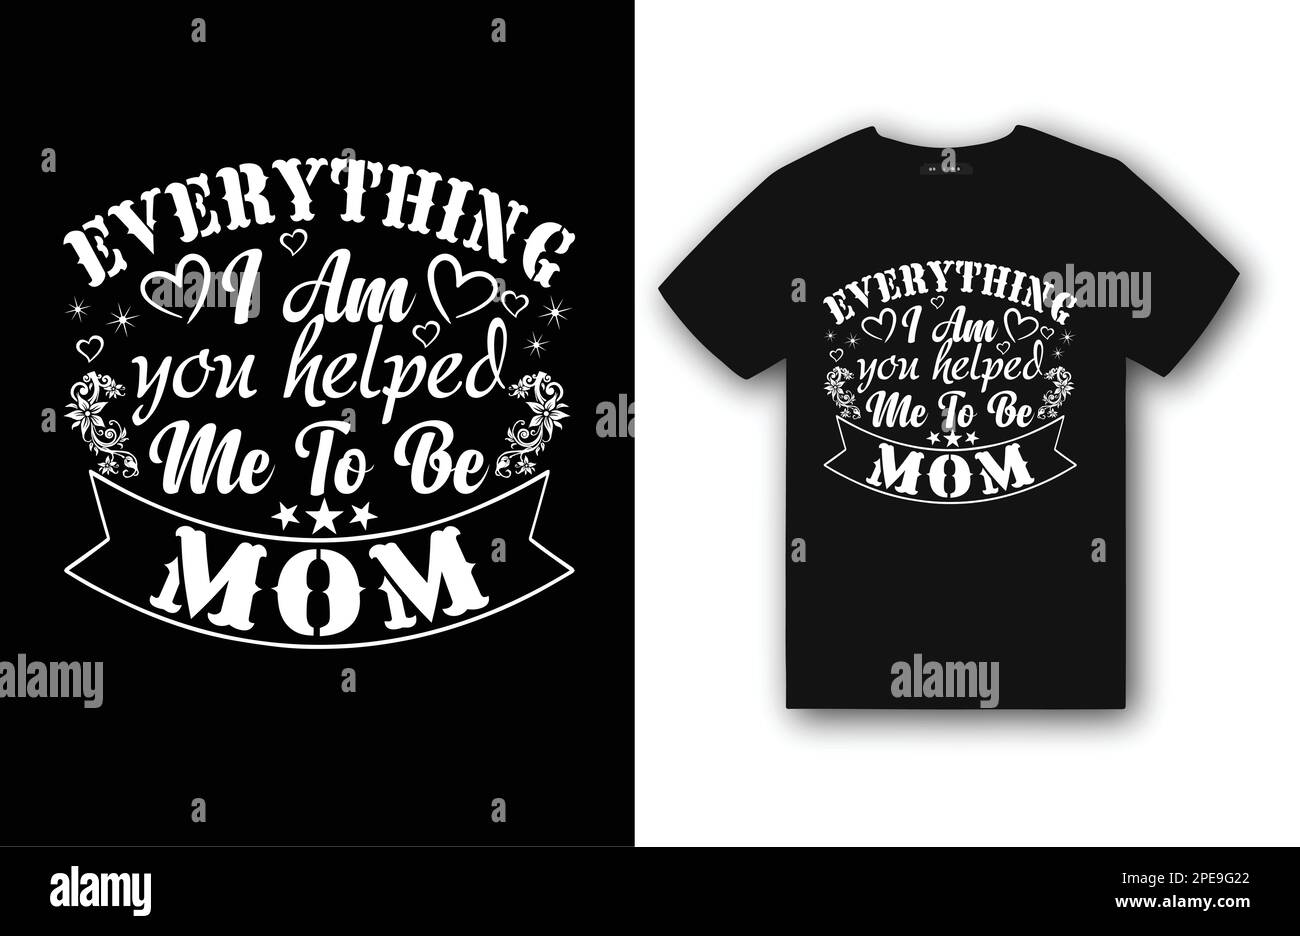 Mom Typografie T-Shirt Design, mom liebte T-Shirt Design für die Welt Du bist eine Mutter aber für Deine Familie Du bist die Welt, Muttertag liebe mom T-Shirt Stock Vektor